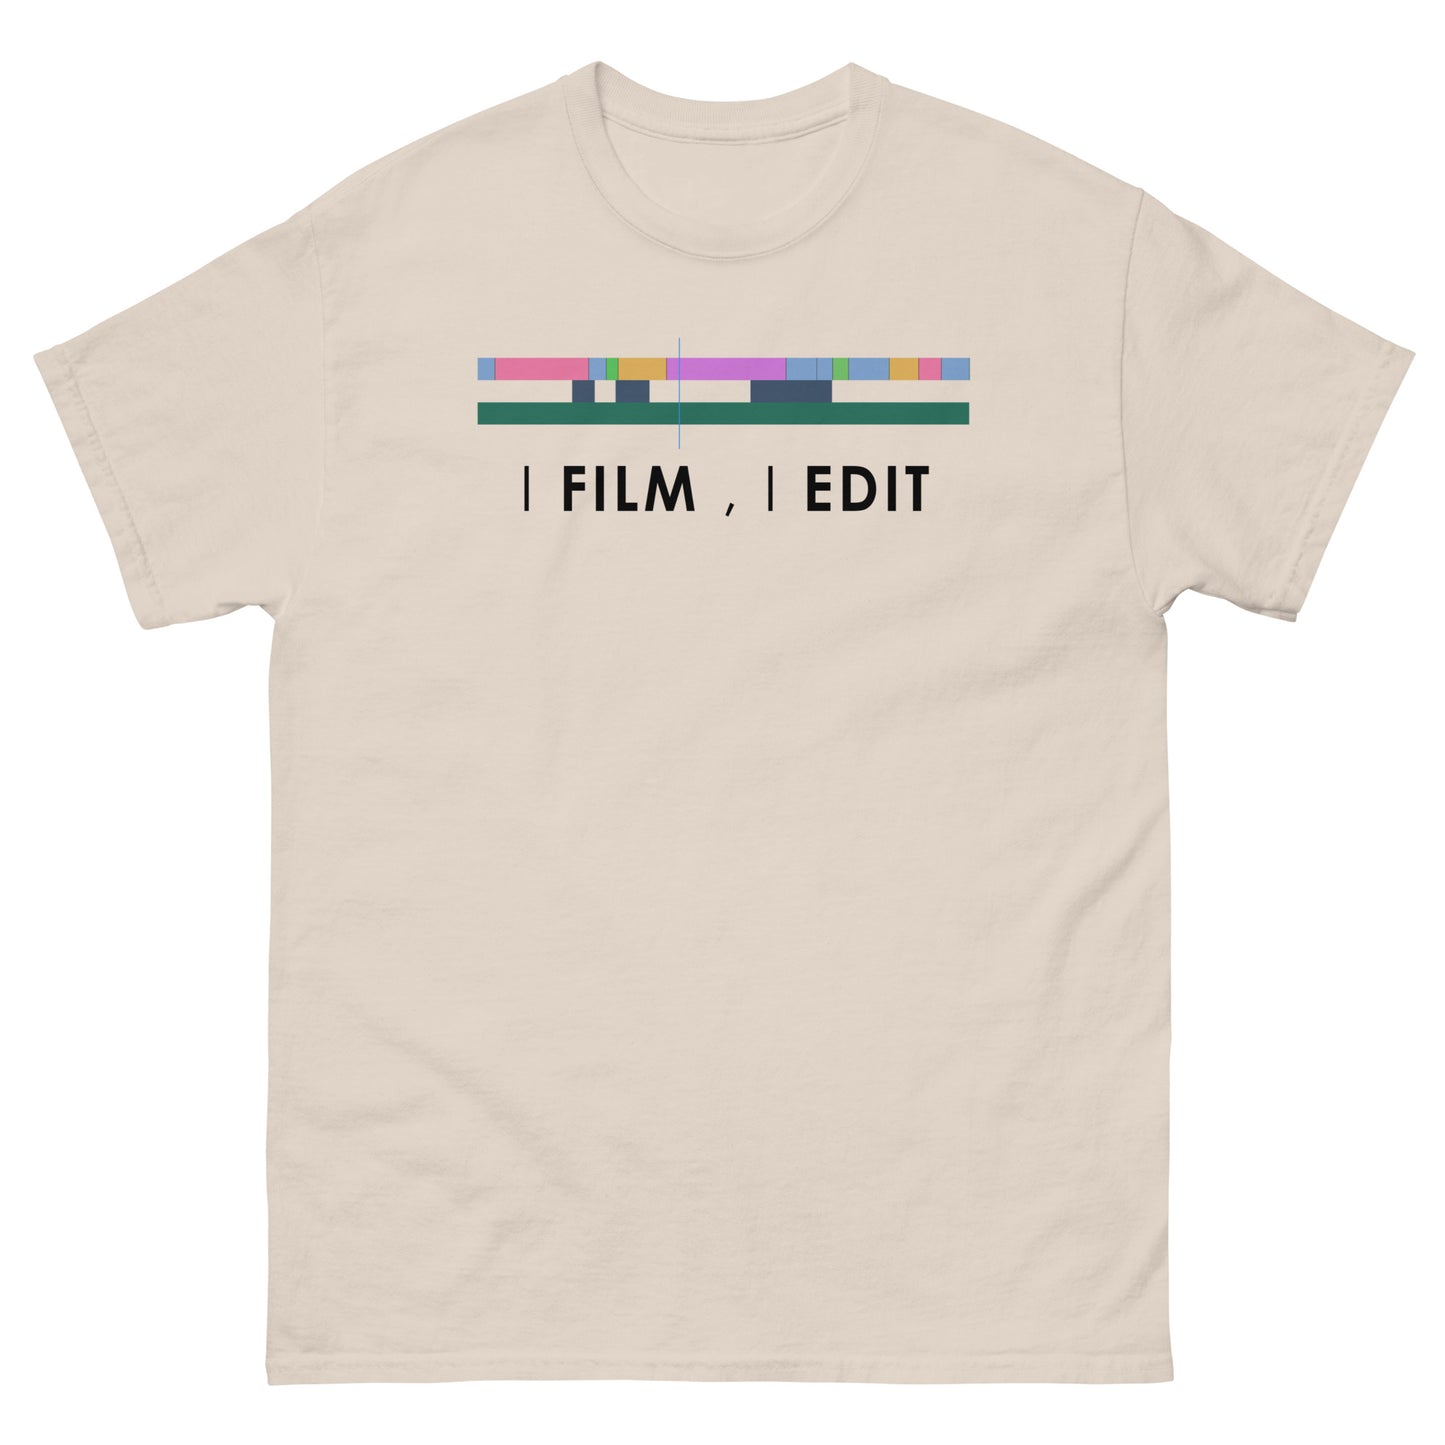 Camisetas de hombre - Filmo y edito - Logotipo negro